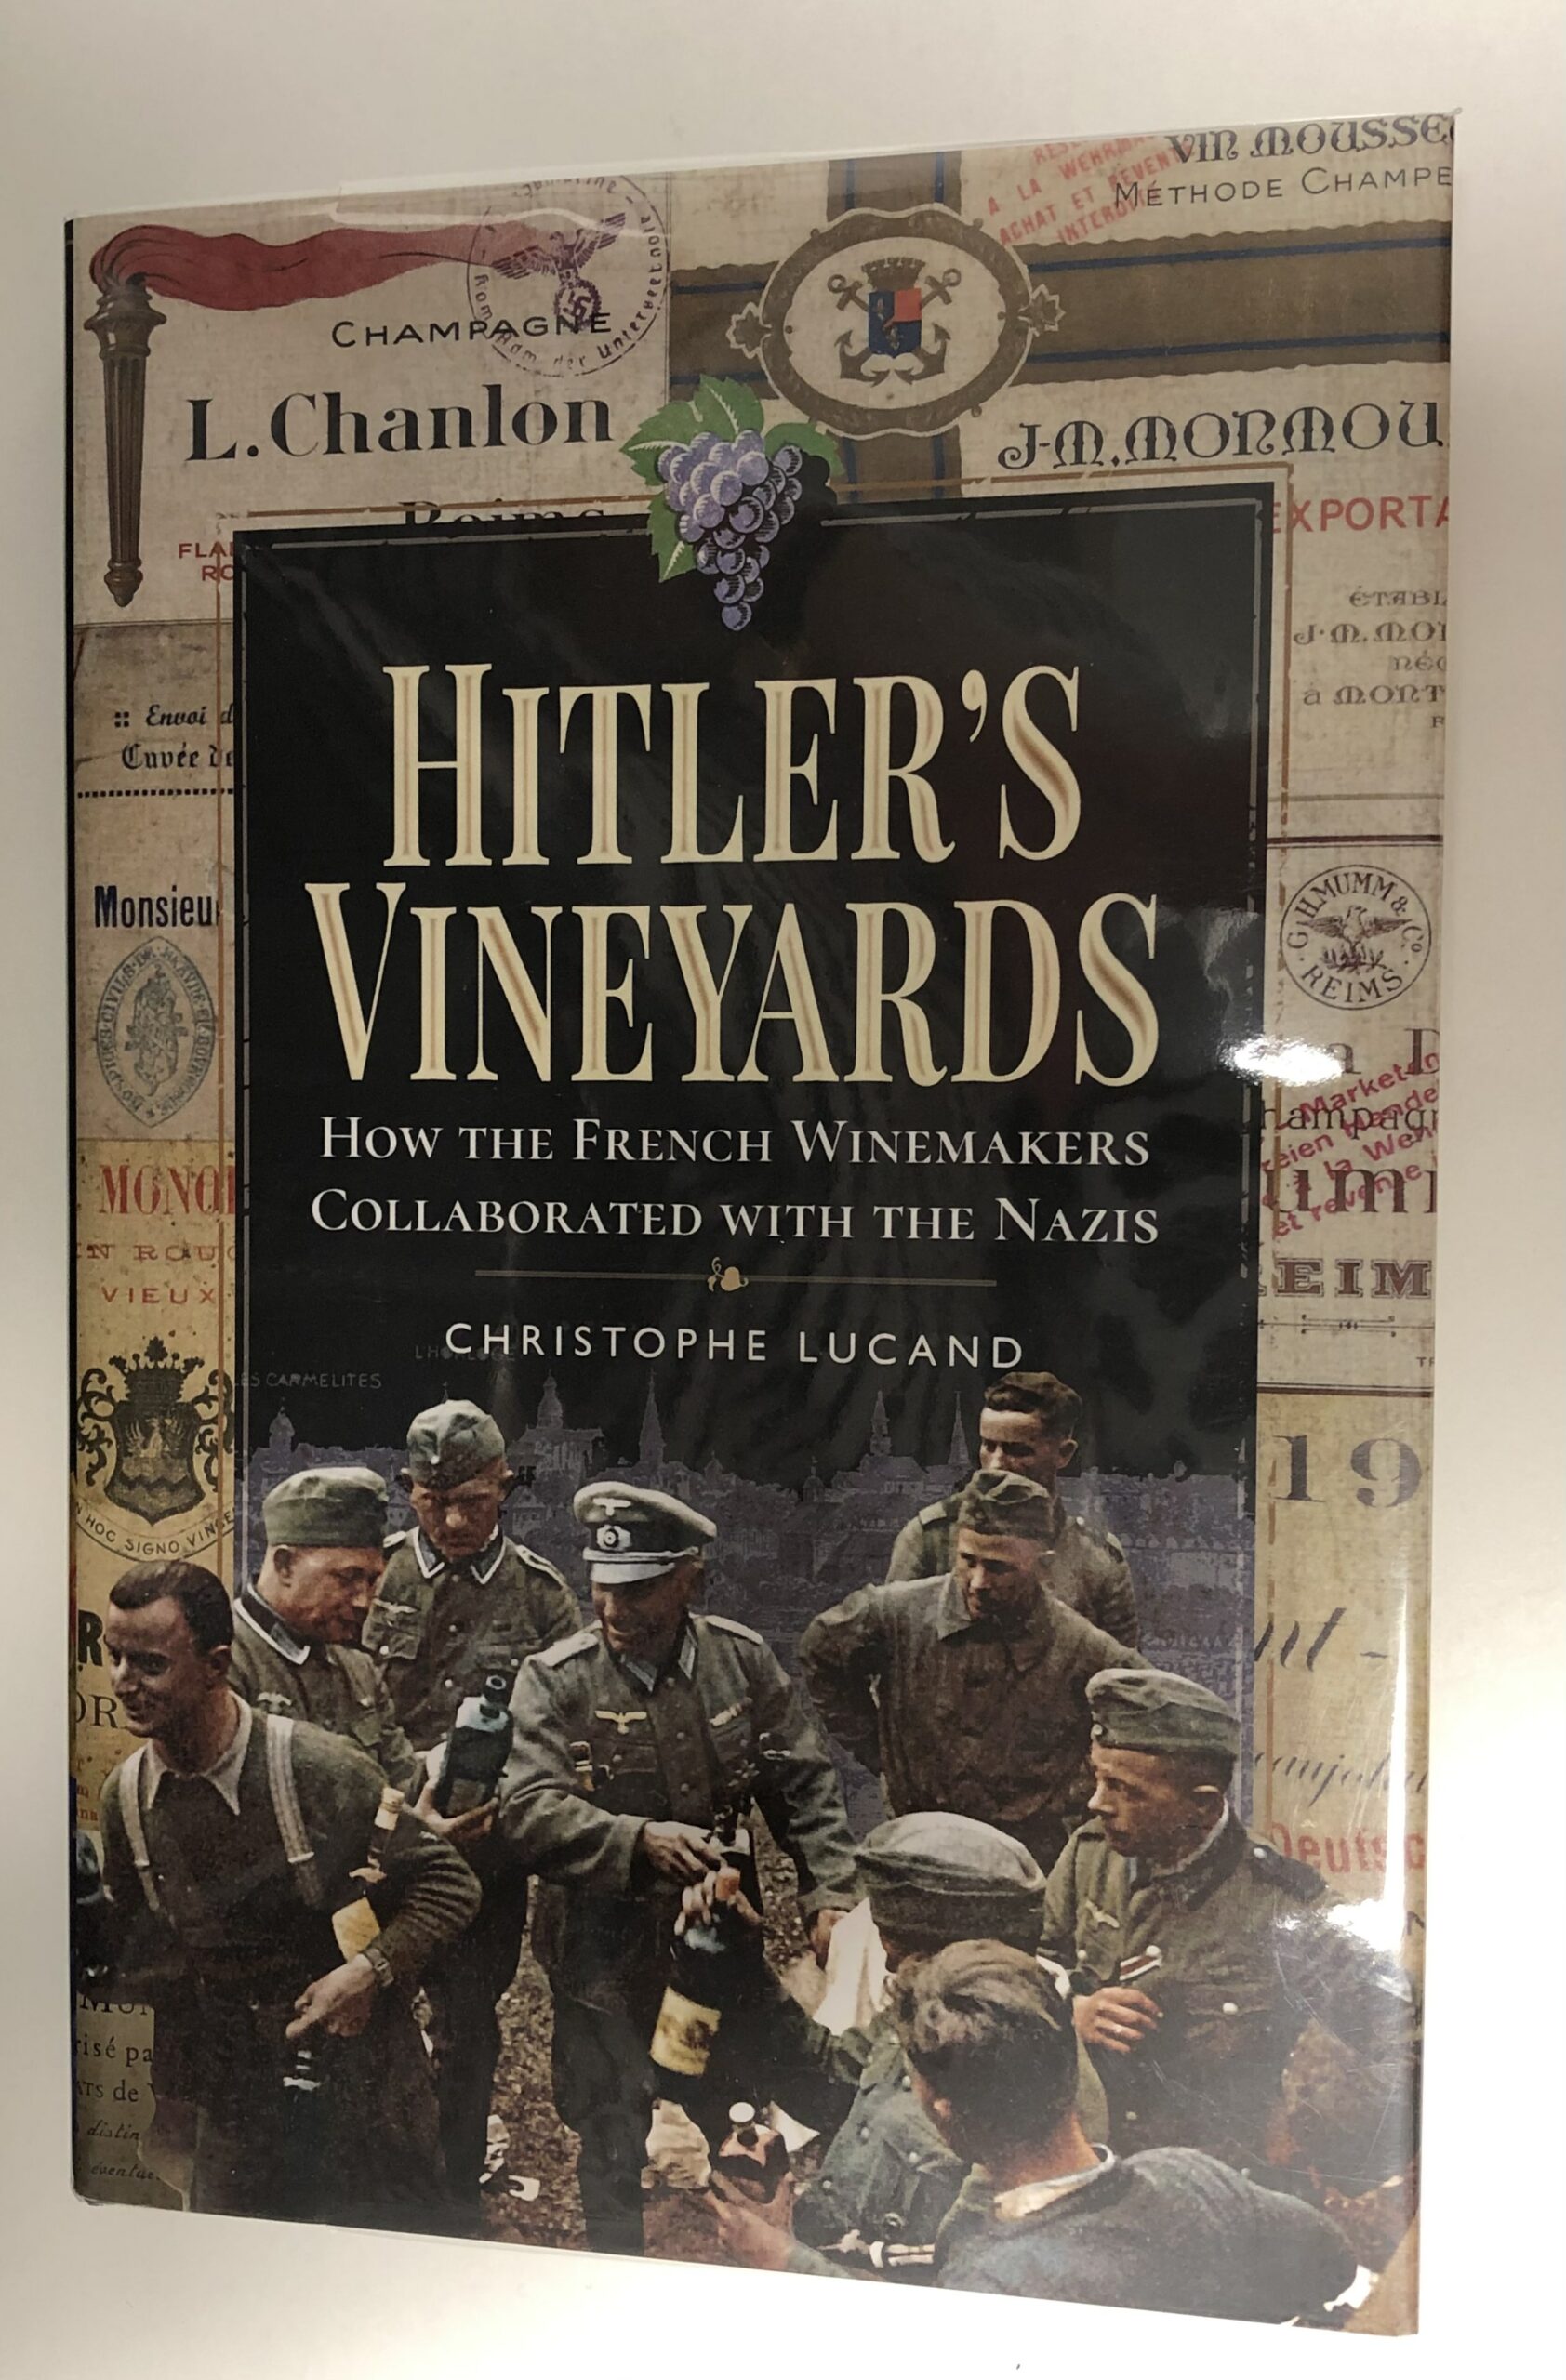 Livre “Hitler’s Vineyards” de Christophe Lucand